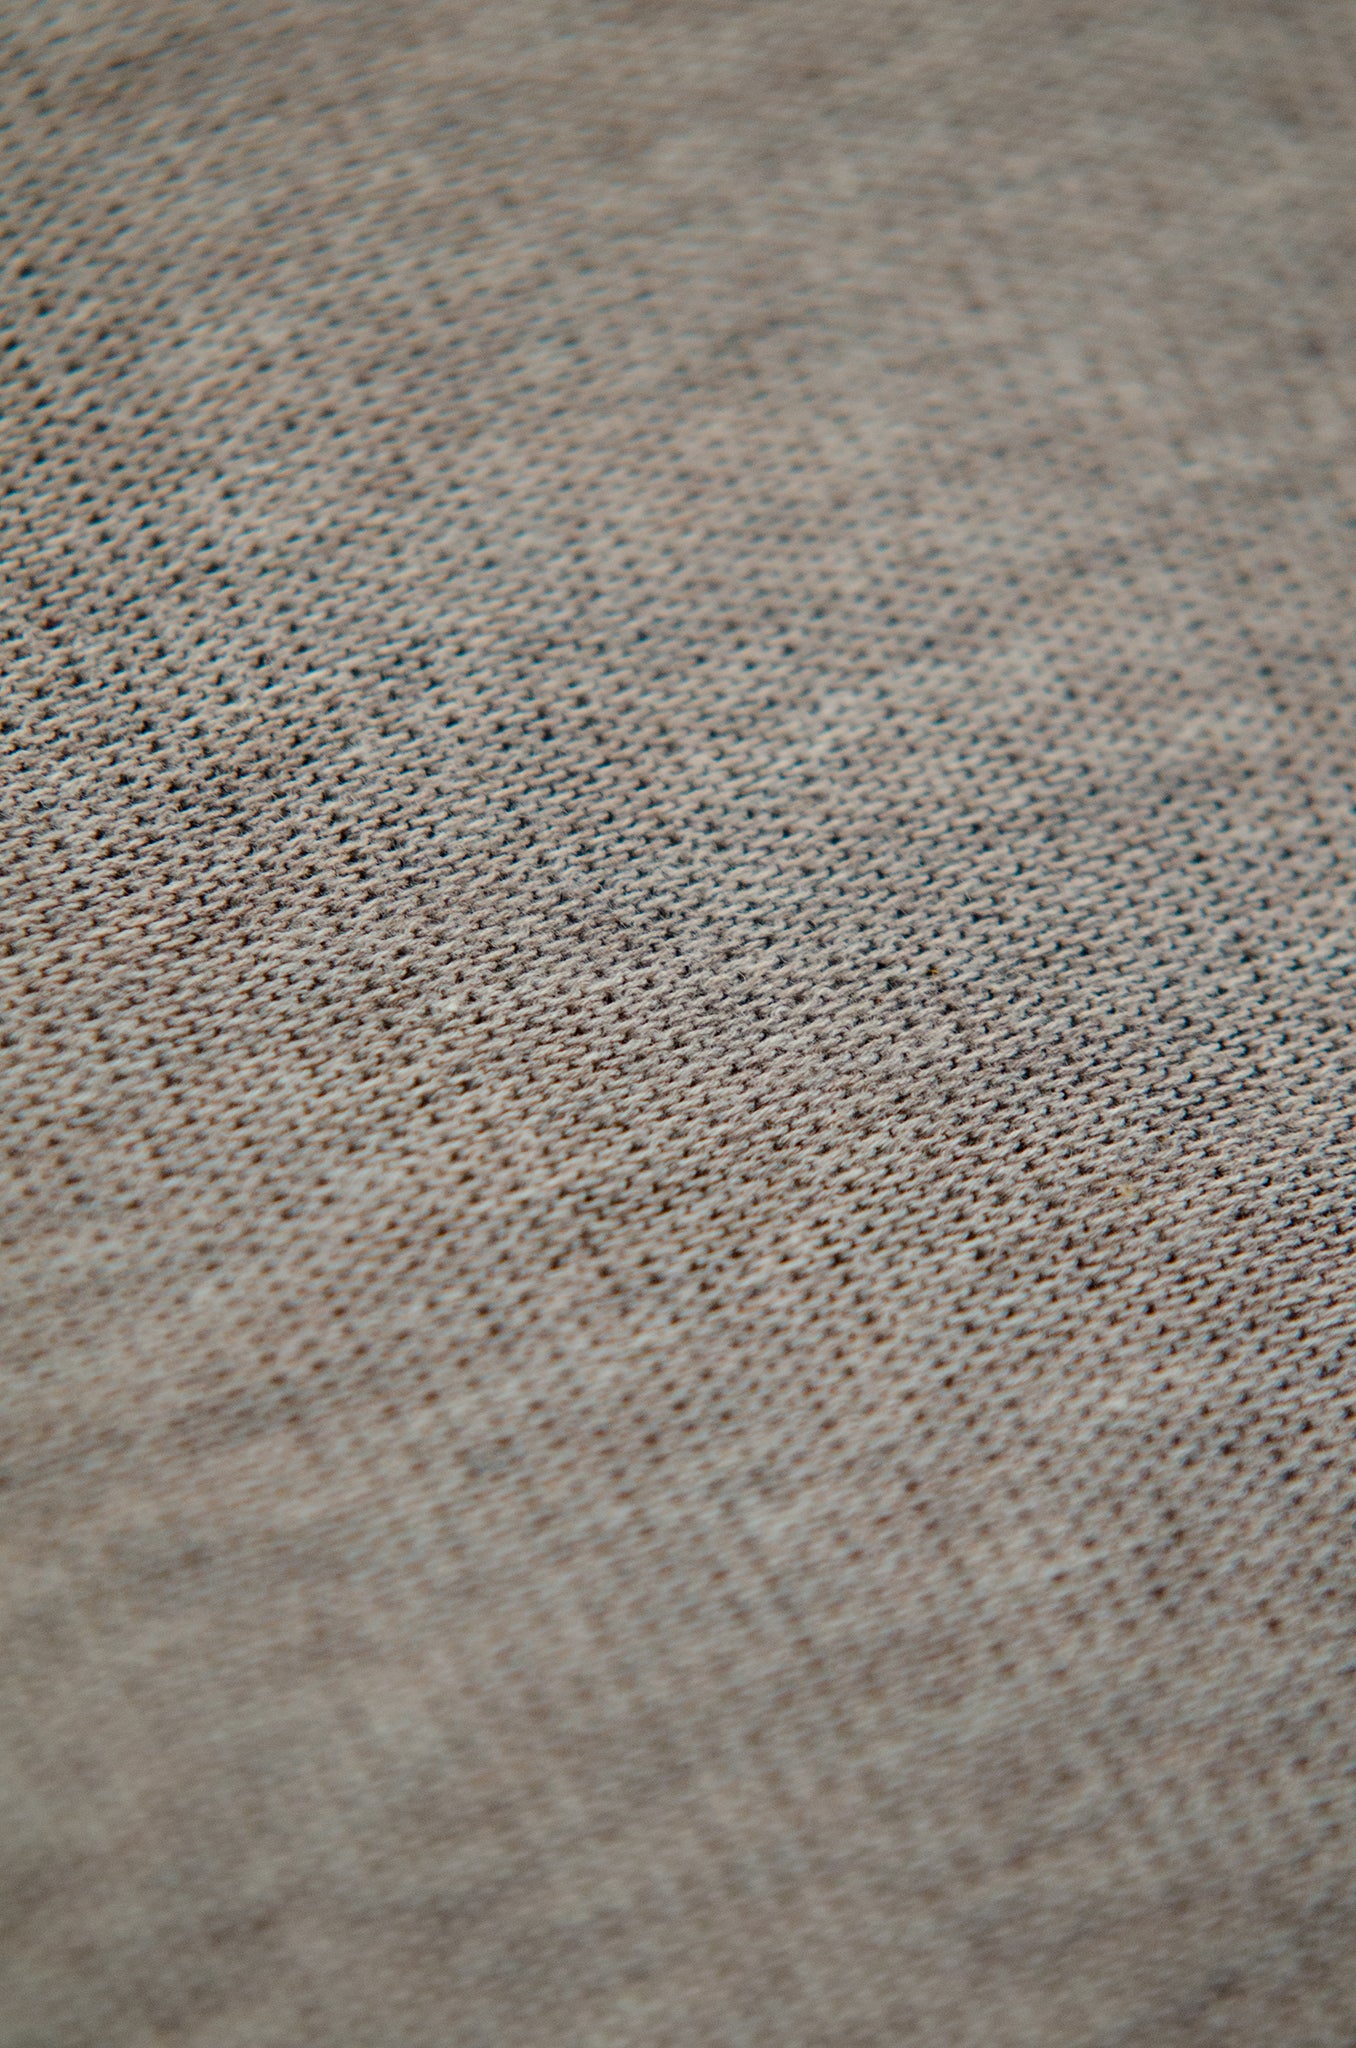 Maté polo tricot compact cotton (sand melange)